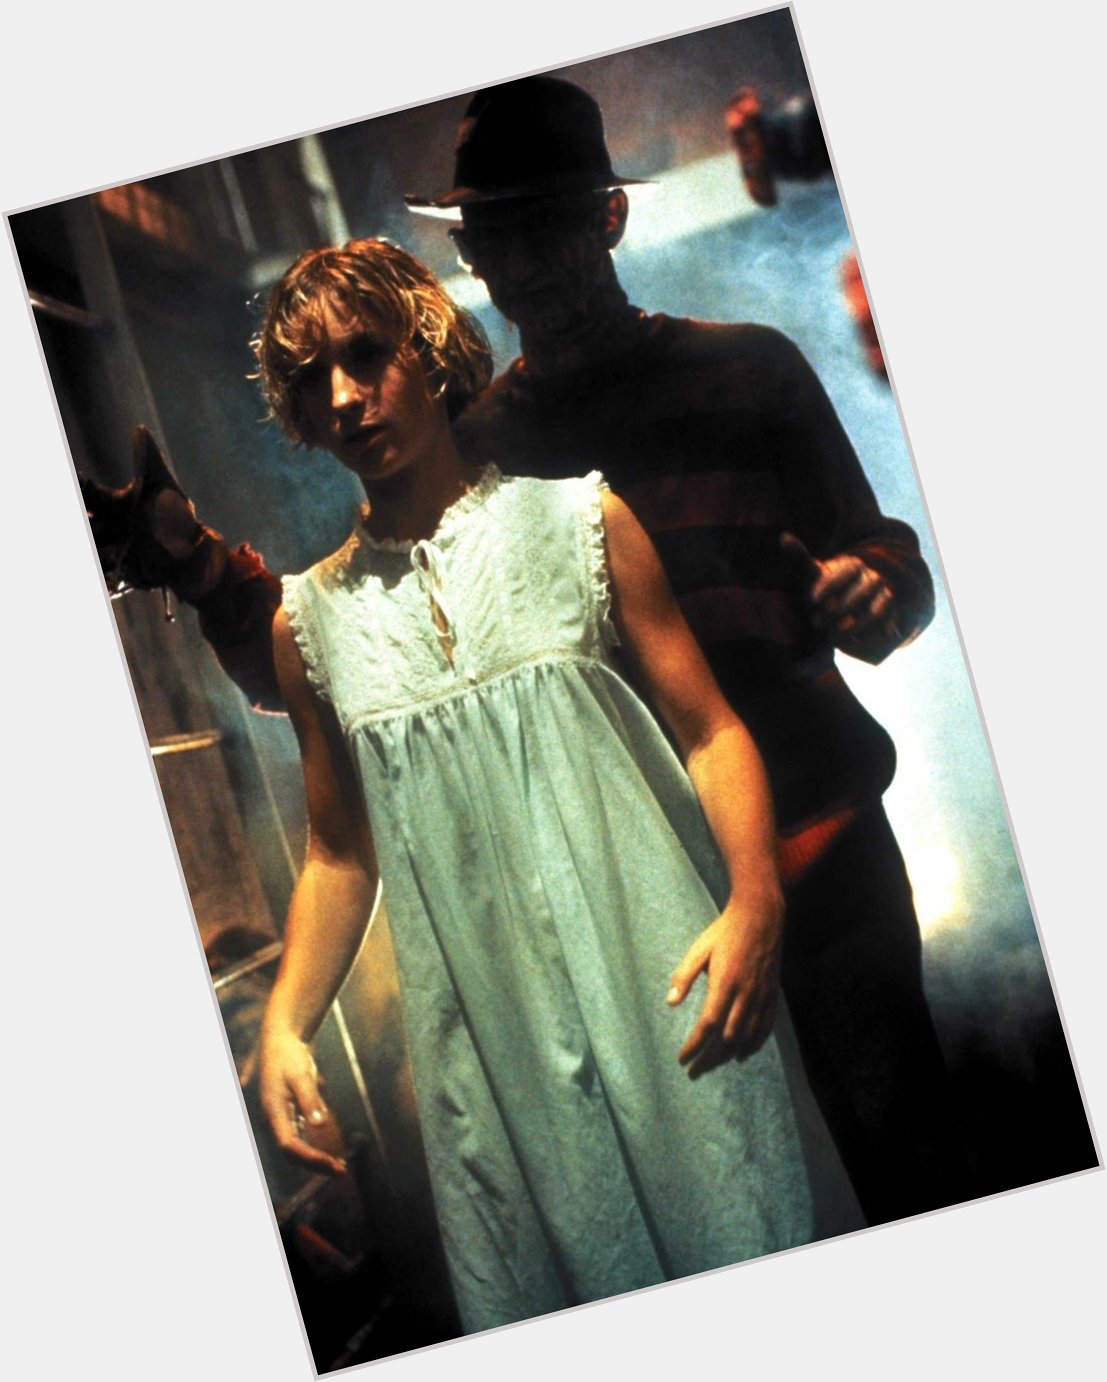 Happy 60th birthday to A NIGHTMARE ON ELM STREET (1984) star Amanda Wyss! 